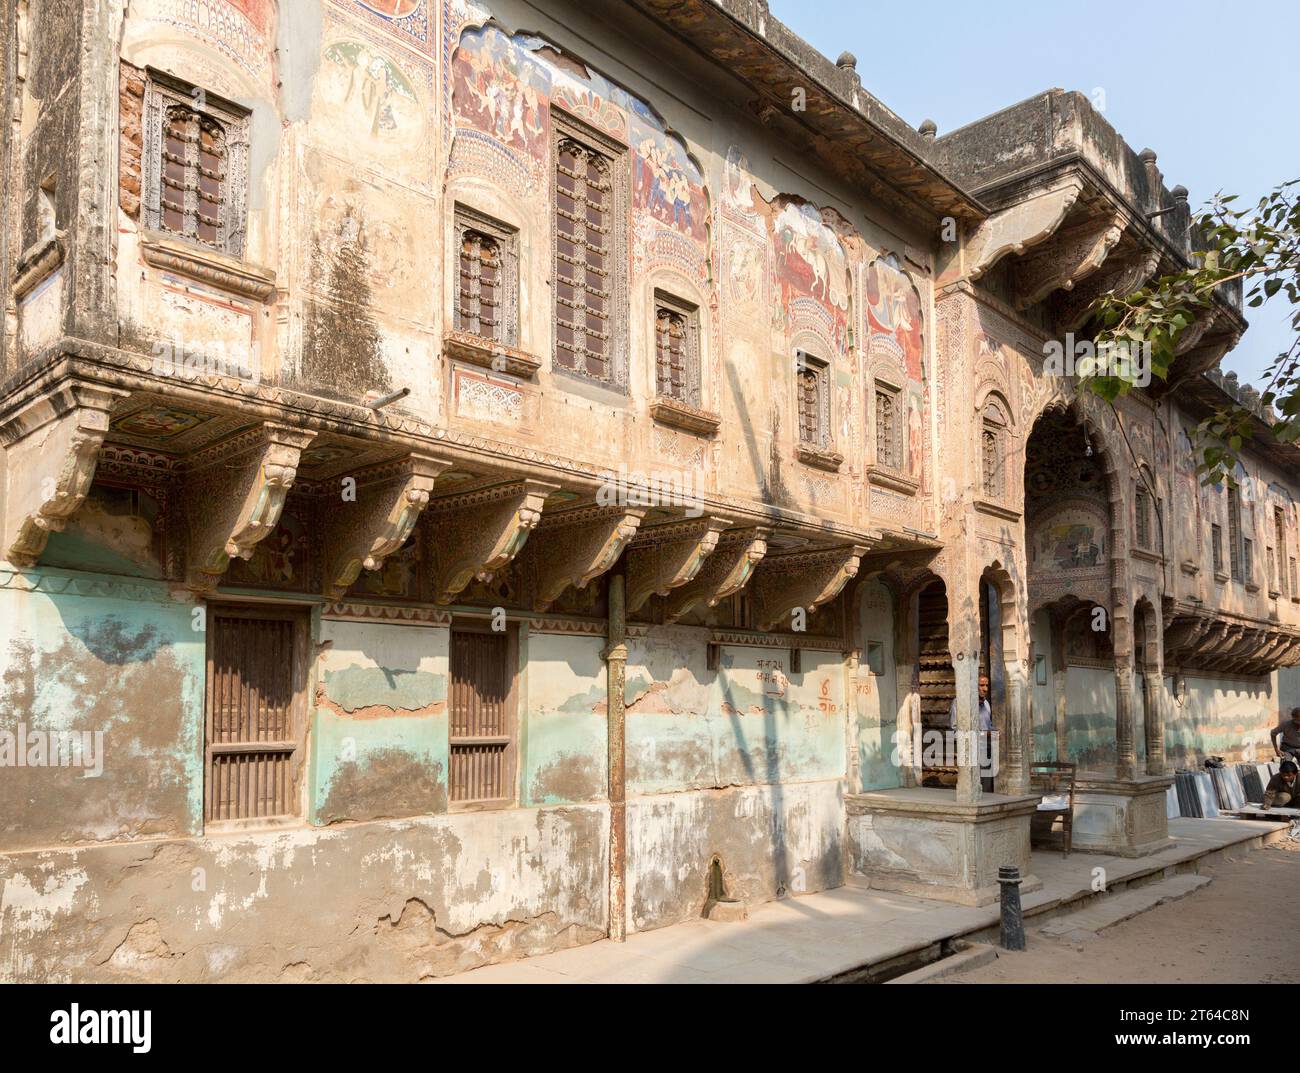 Bansidhar Bhagat Haveli, Nawalgarh, Rajasthan, Indien. Als Haveli werden die palastartig ausgestalteten Wohnhäuser wohlhabender – meist muslimischer – Stock Photo